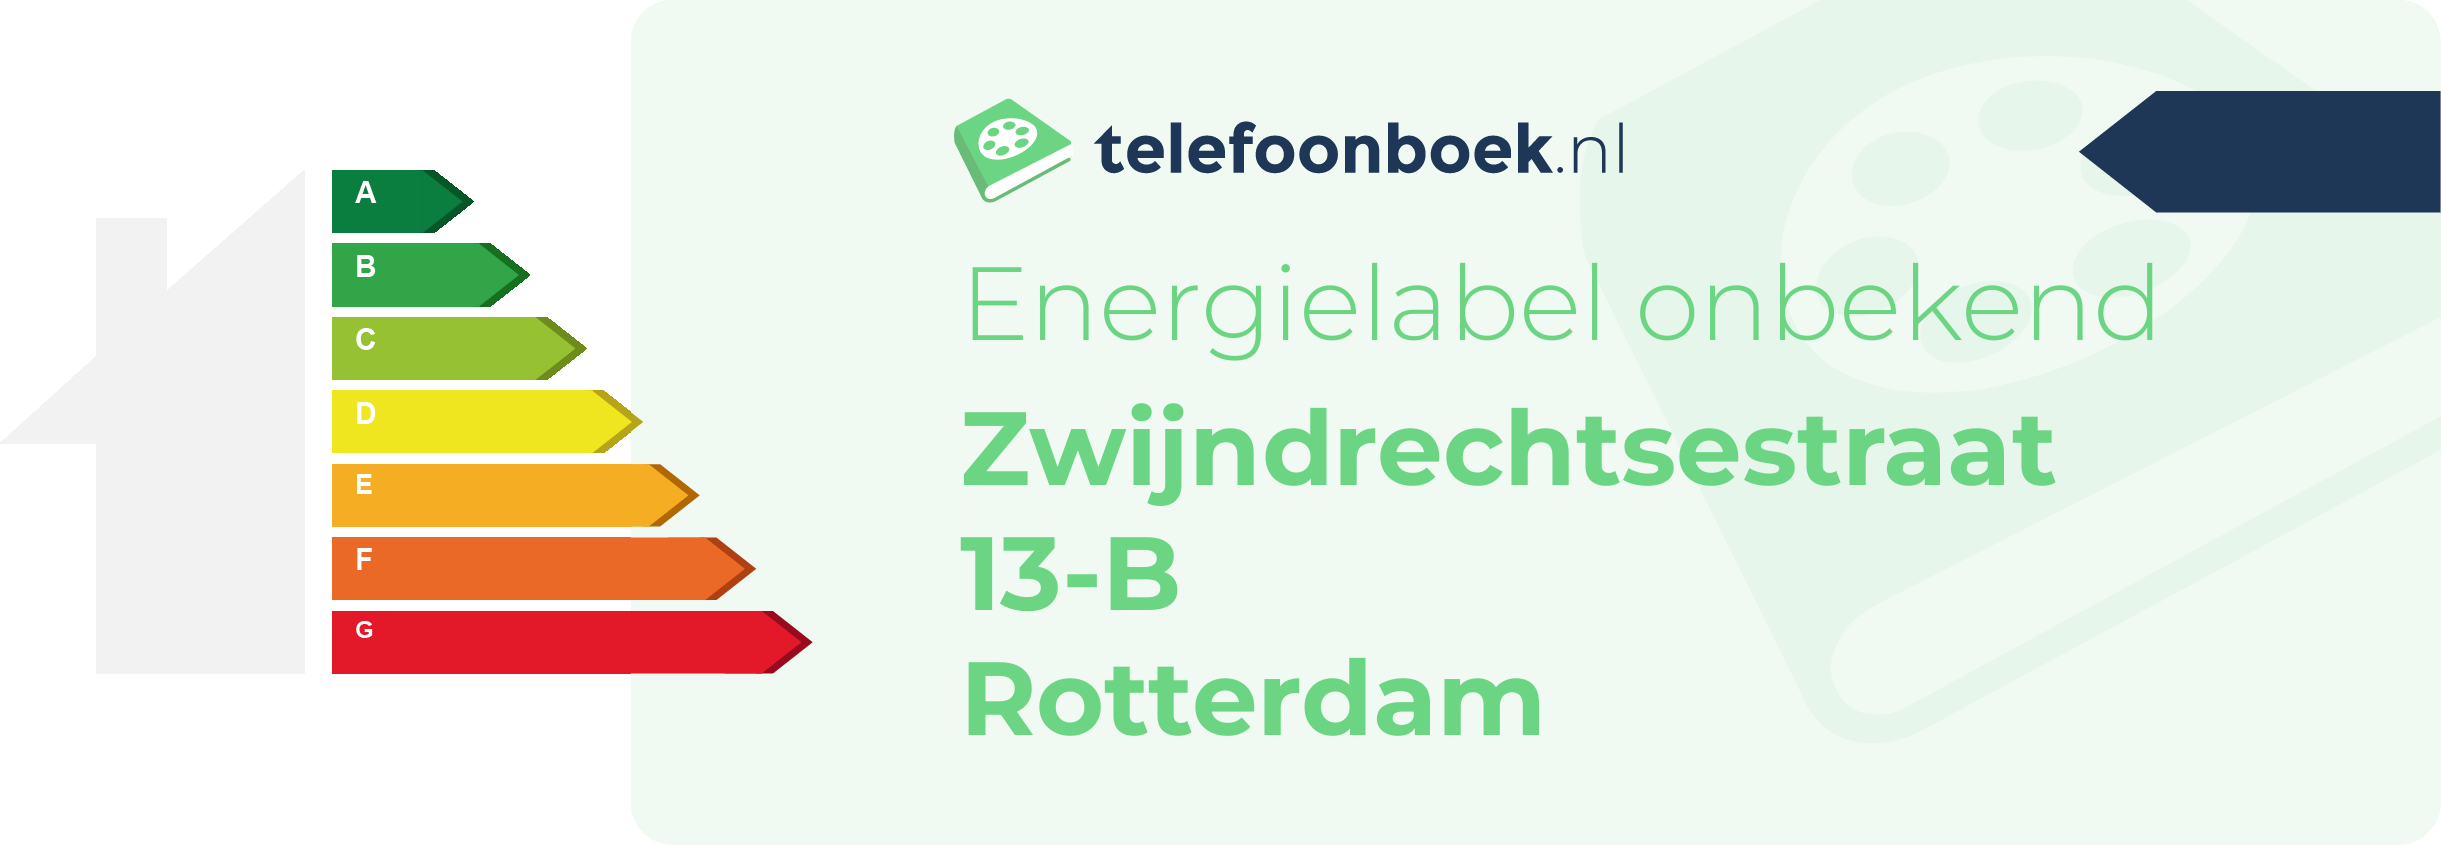 Energielabel Zwijndrechtsestraat 13-B Rotterdam